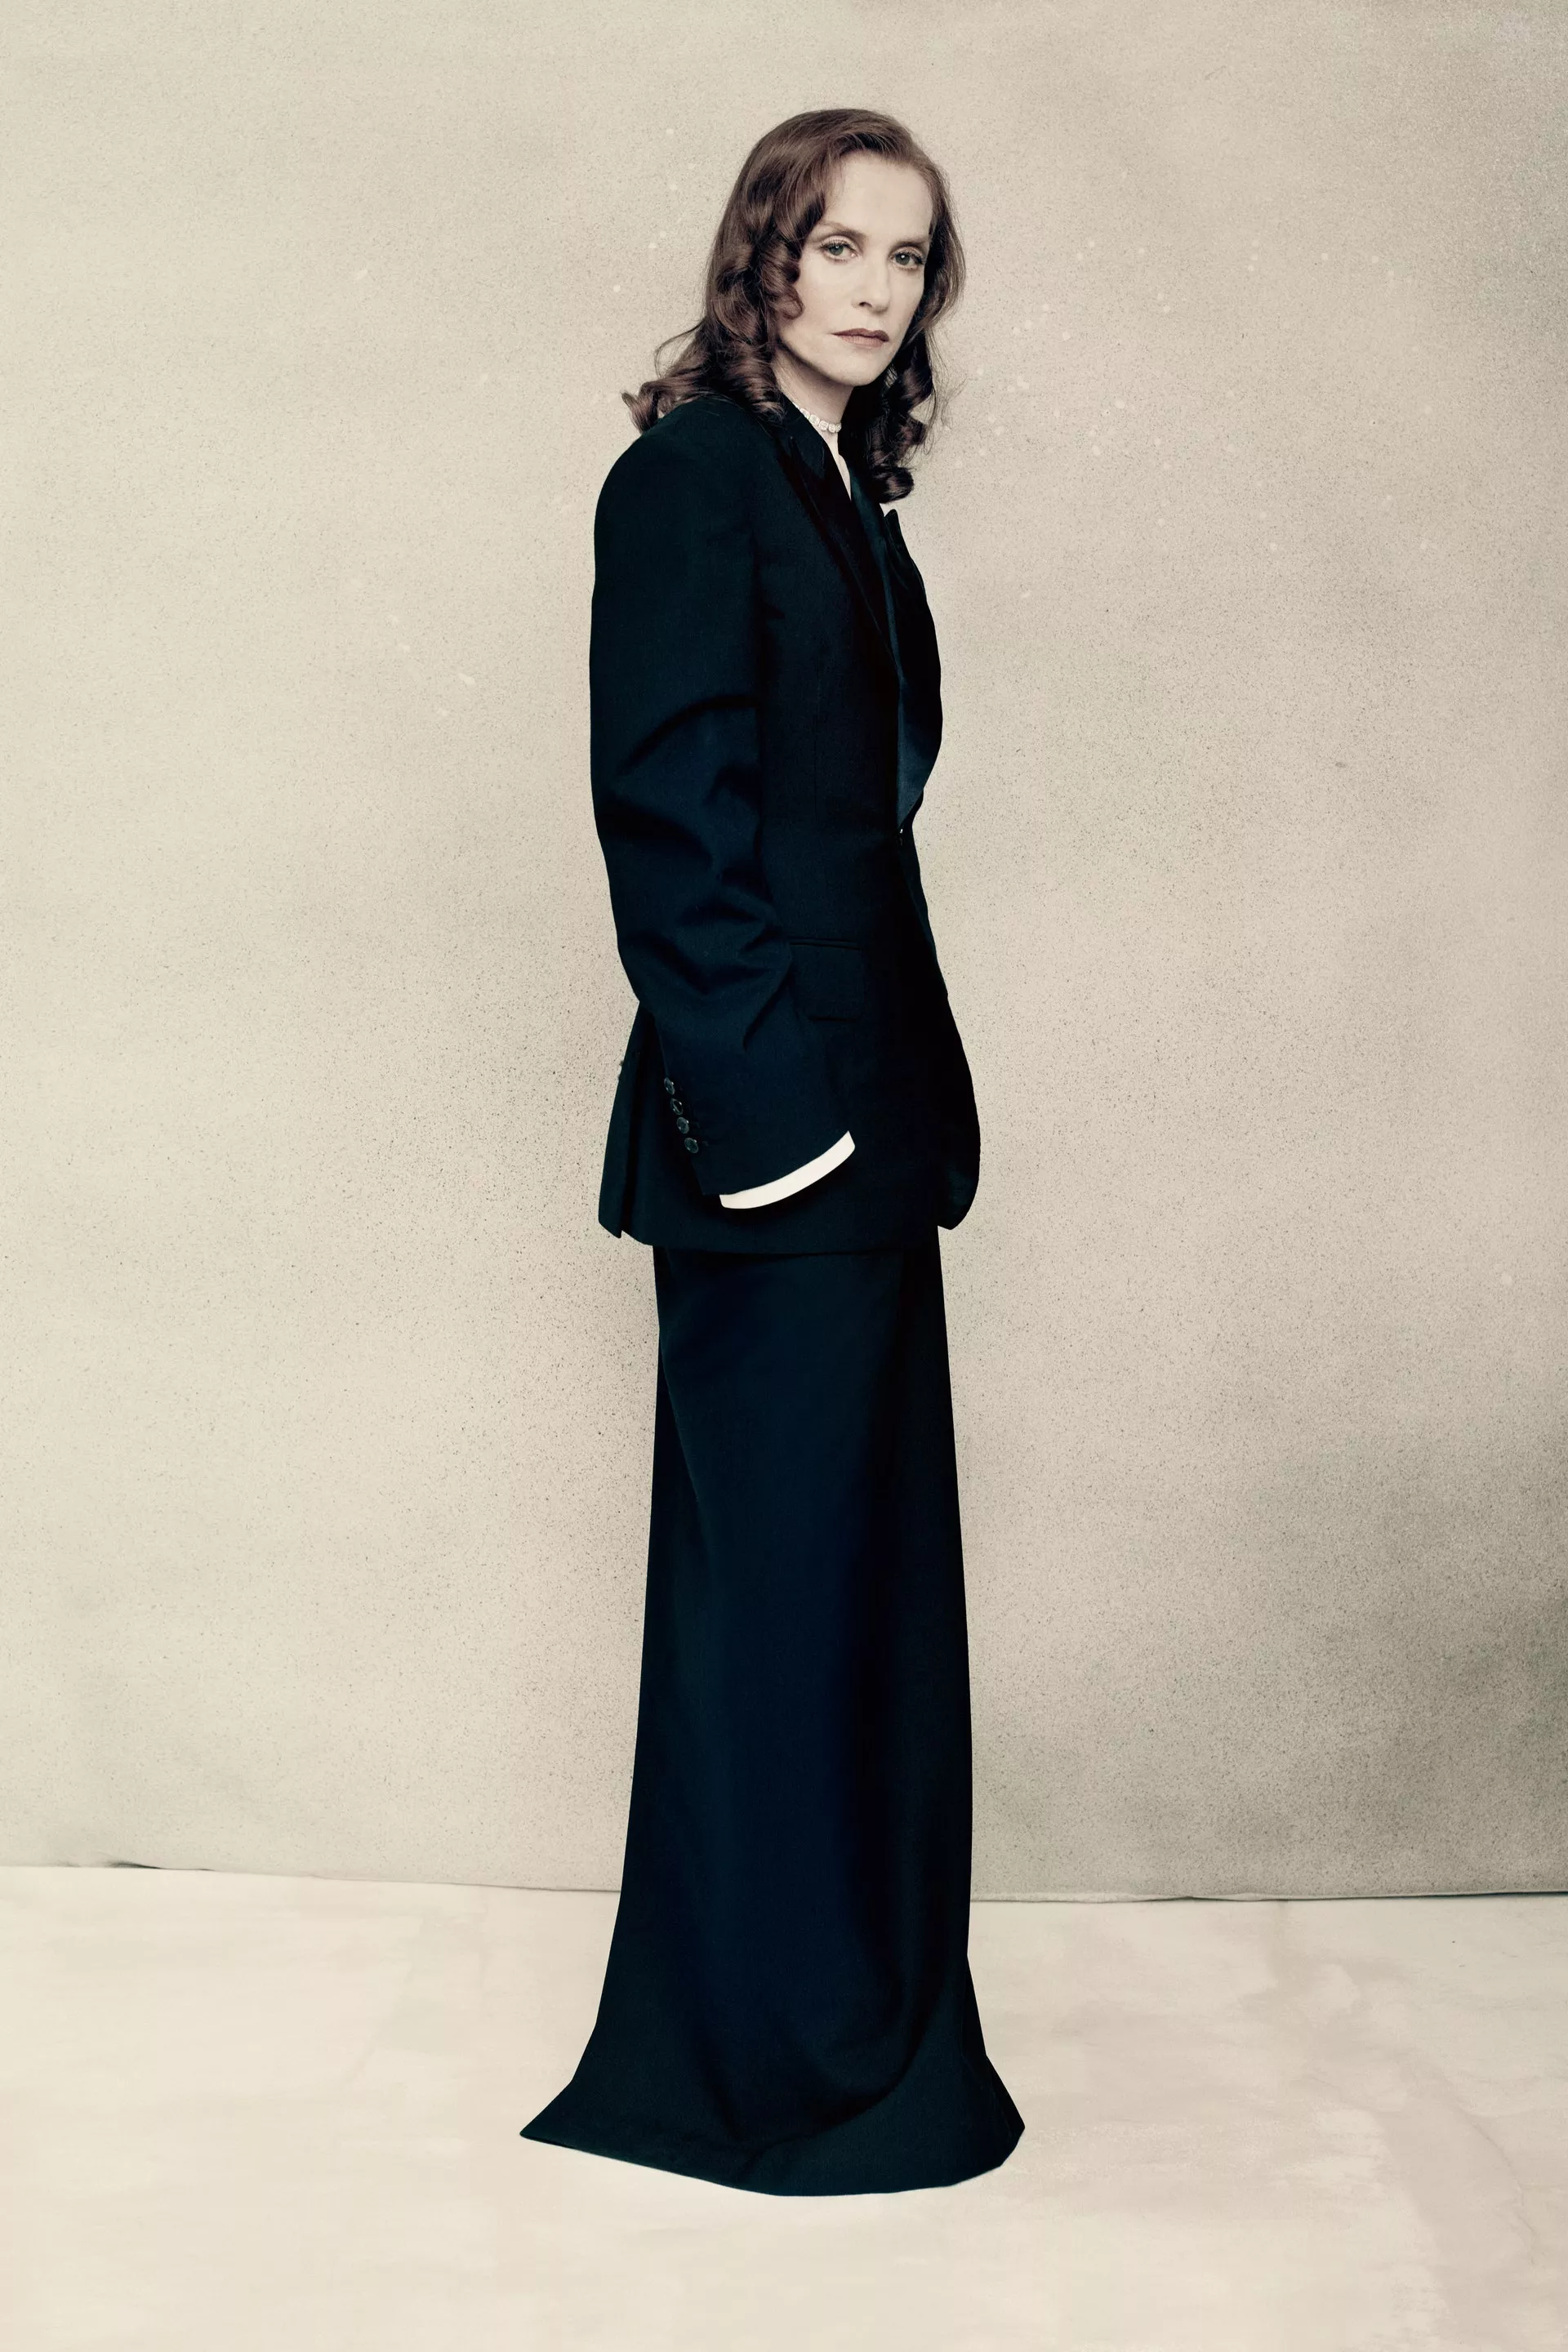 Изабель Юппер в съемке для французского Vogue